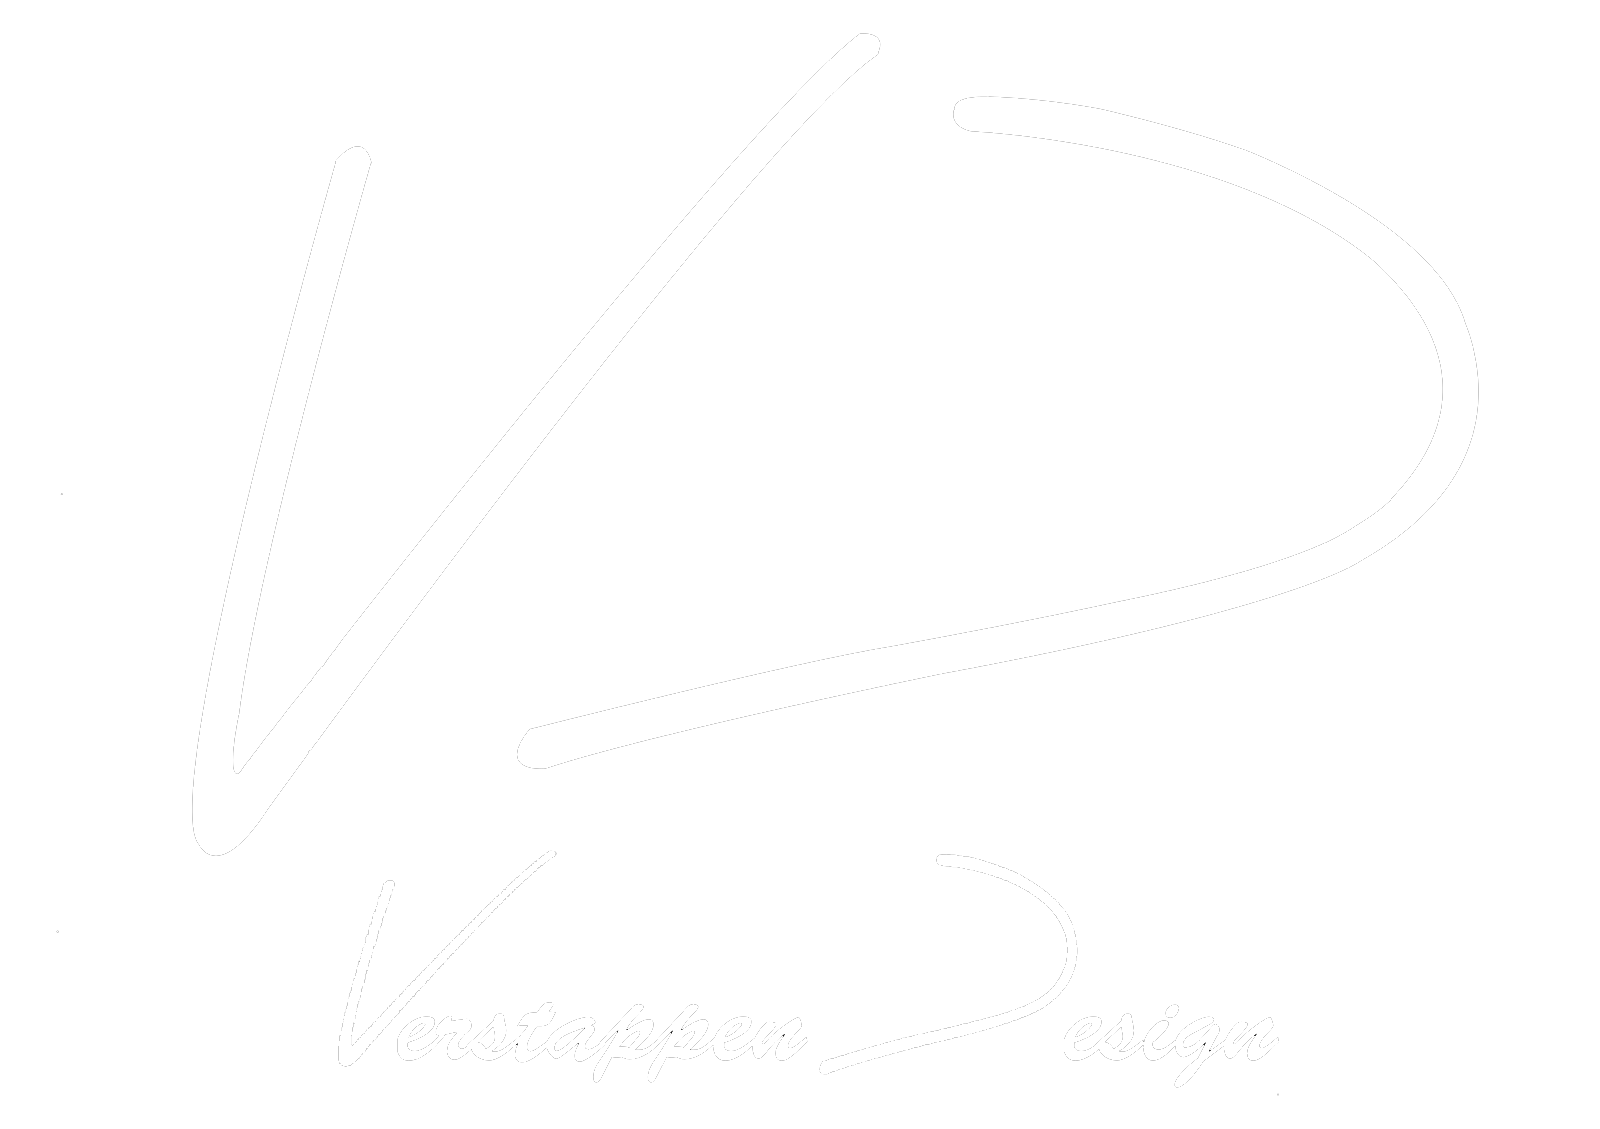 Verstappen Design LTD